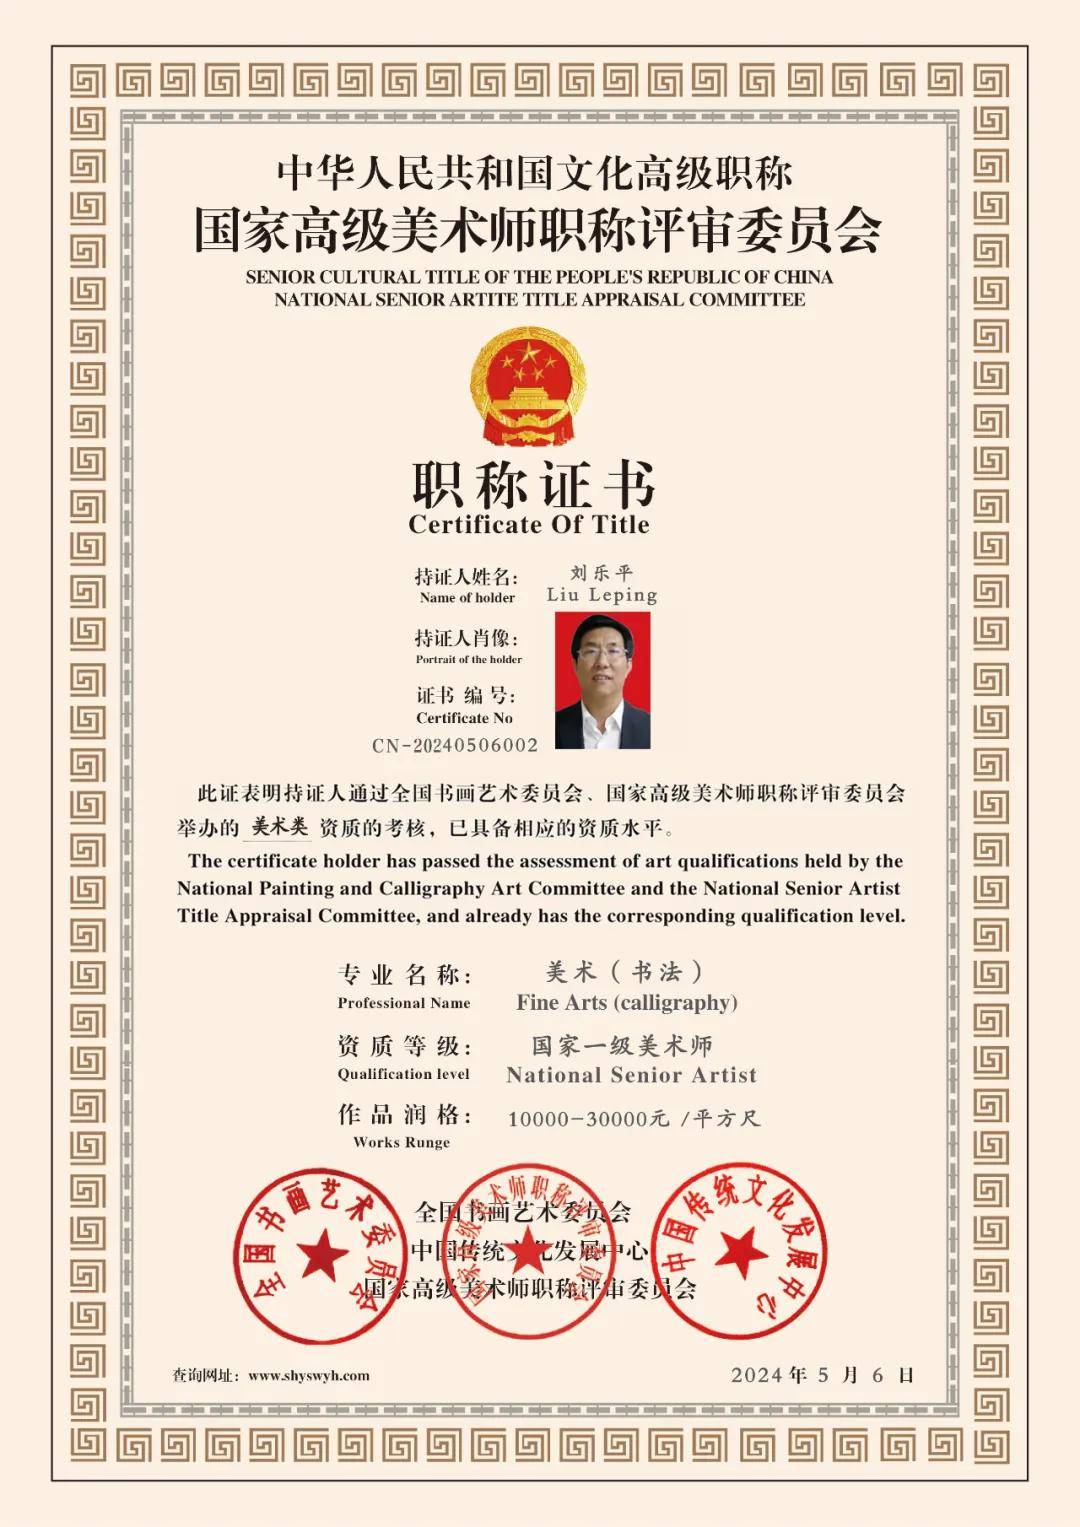 刘乐平—— 中国文化高级职称国家一级美术师 (高级职称证书)